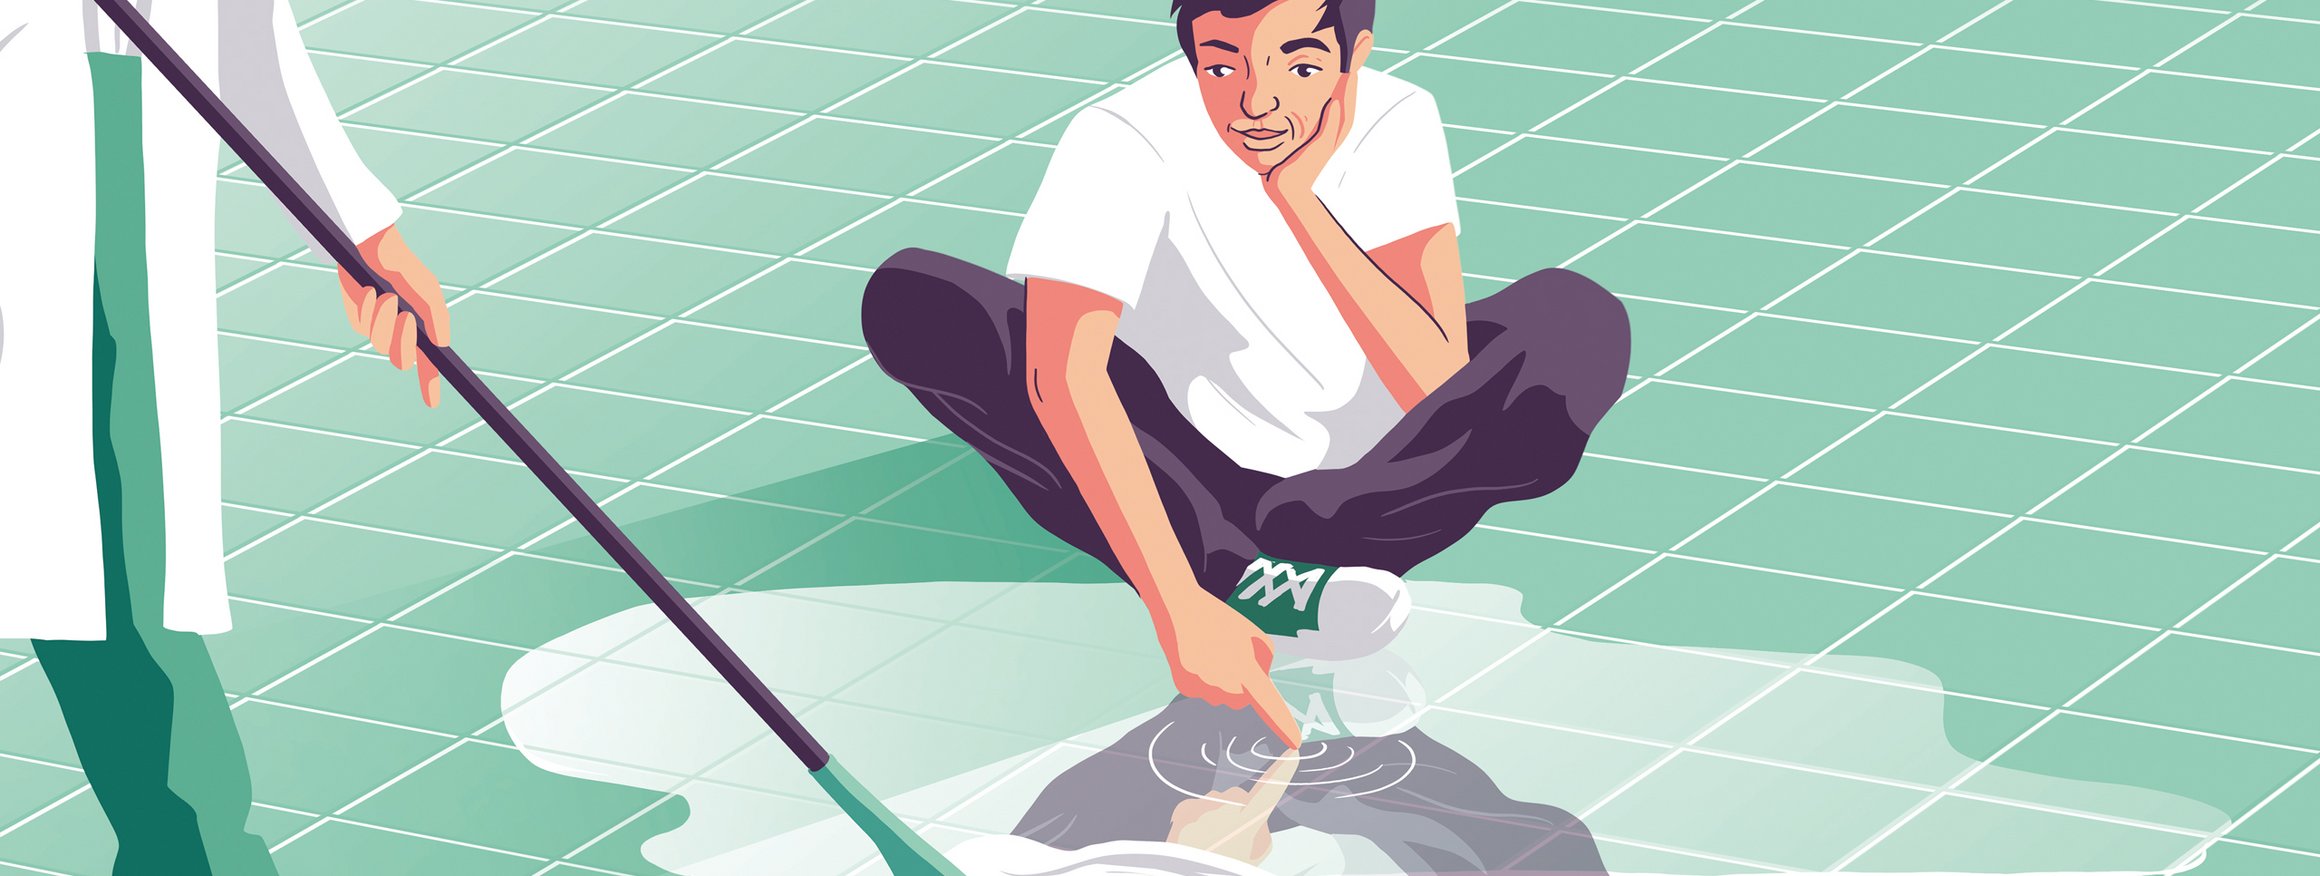 Die Illustration zeigt einen Mann in einer psychiatrischen Klinik, der nachdenklich auf dem Boden sitzt und sich im Putzwasser spiegelt, während die Reinigungskraft den Fußboden mit dem Wischmob wischt